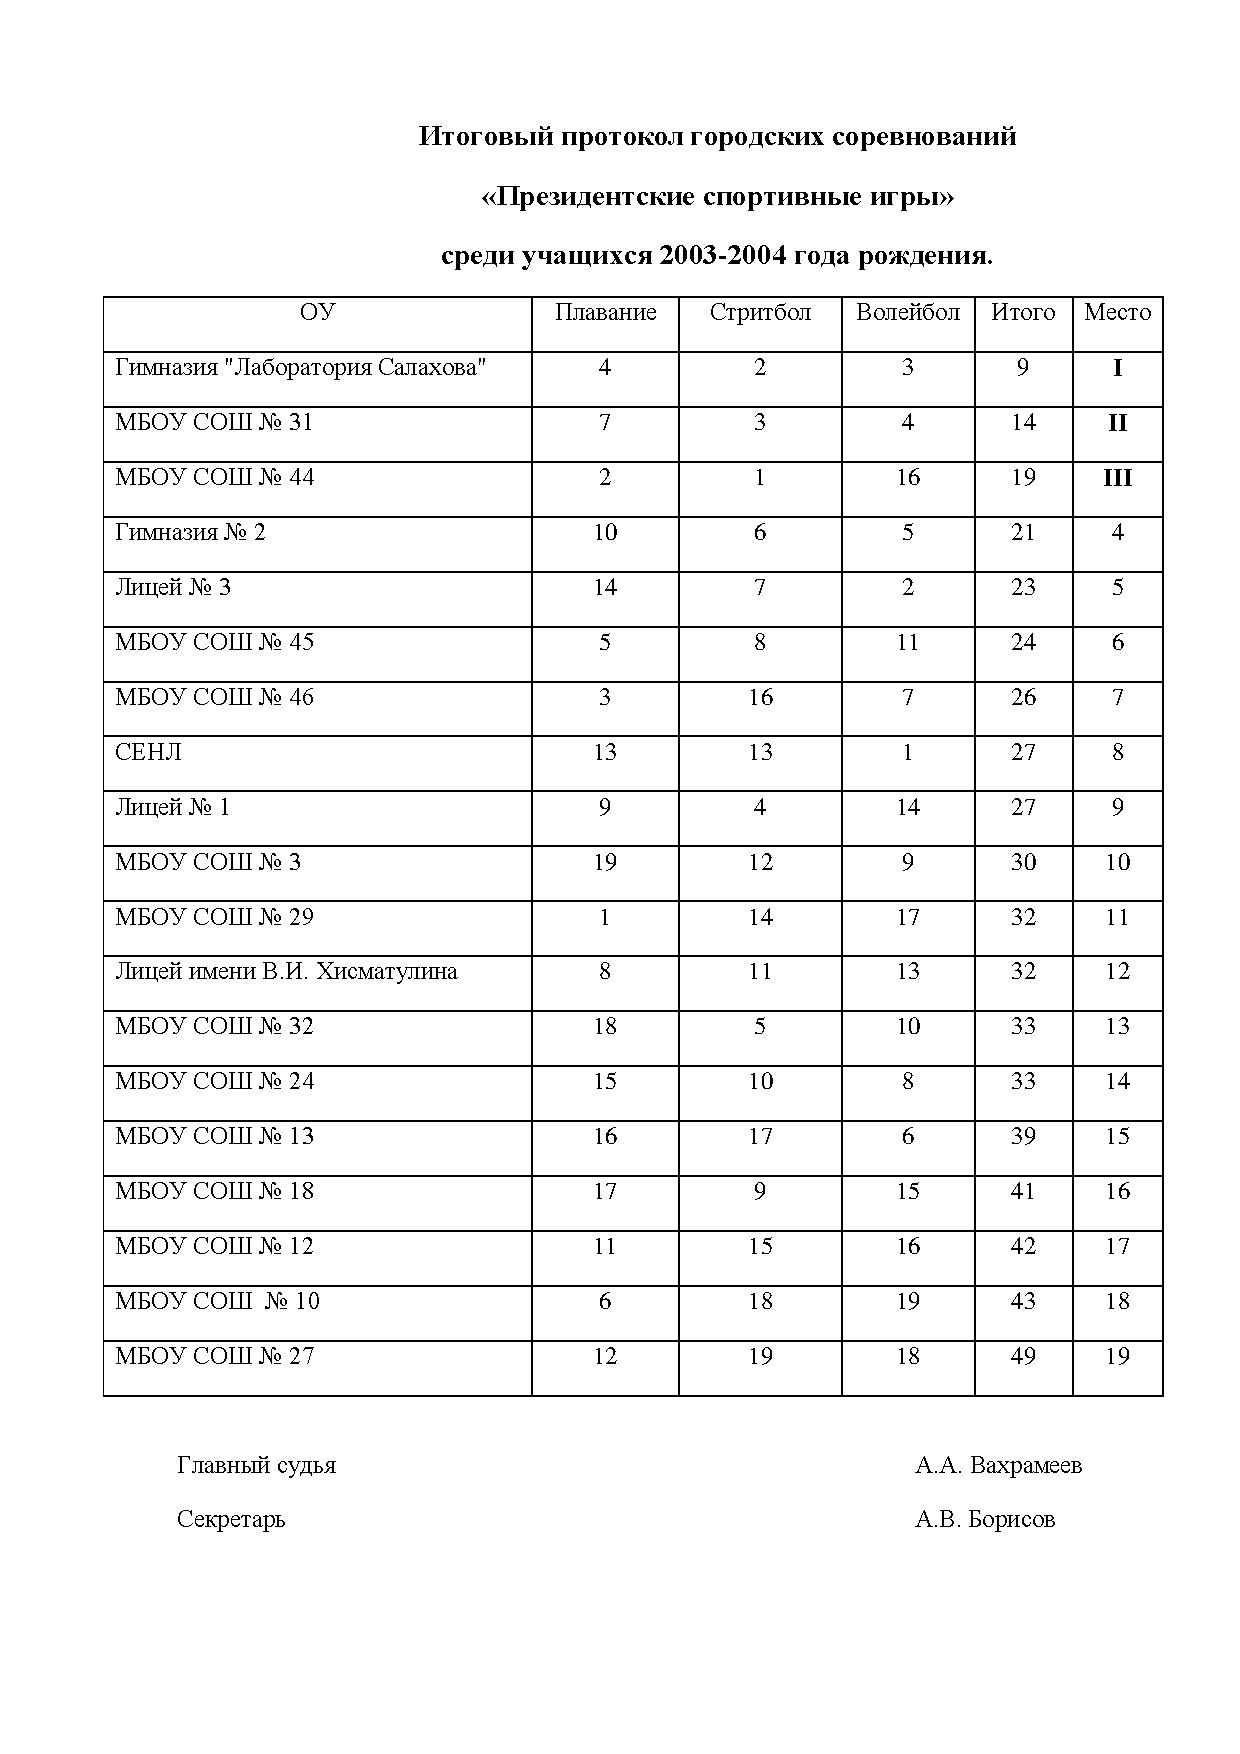 Итоги 2003-2004.pdf